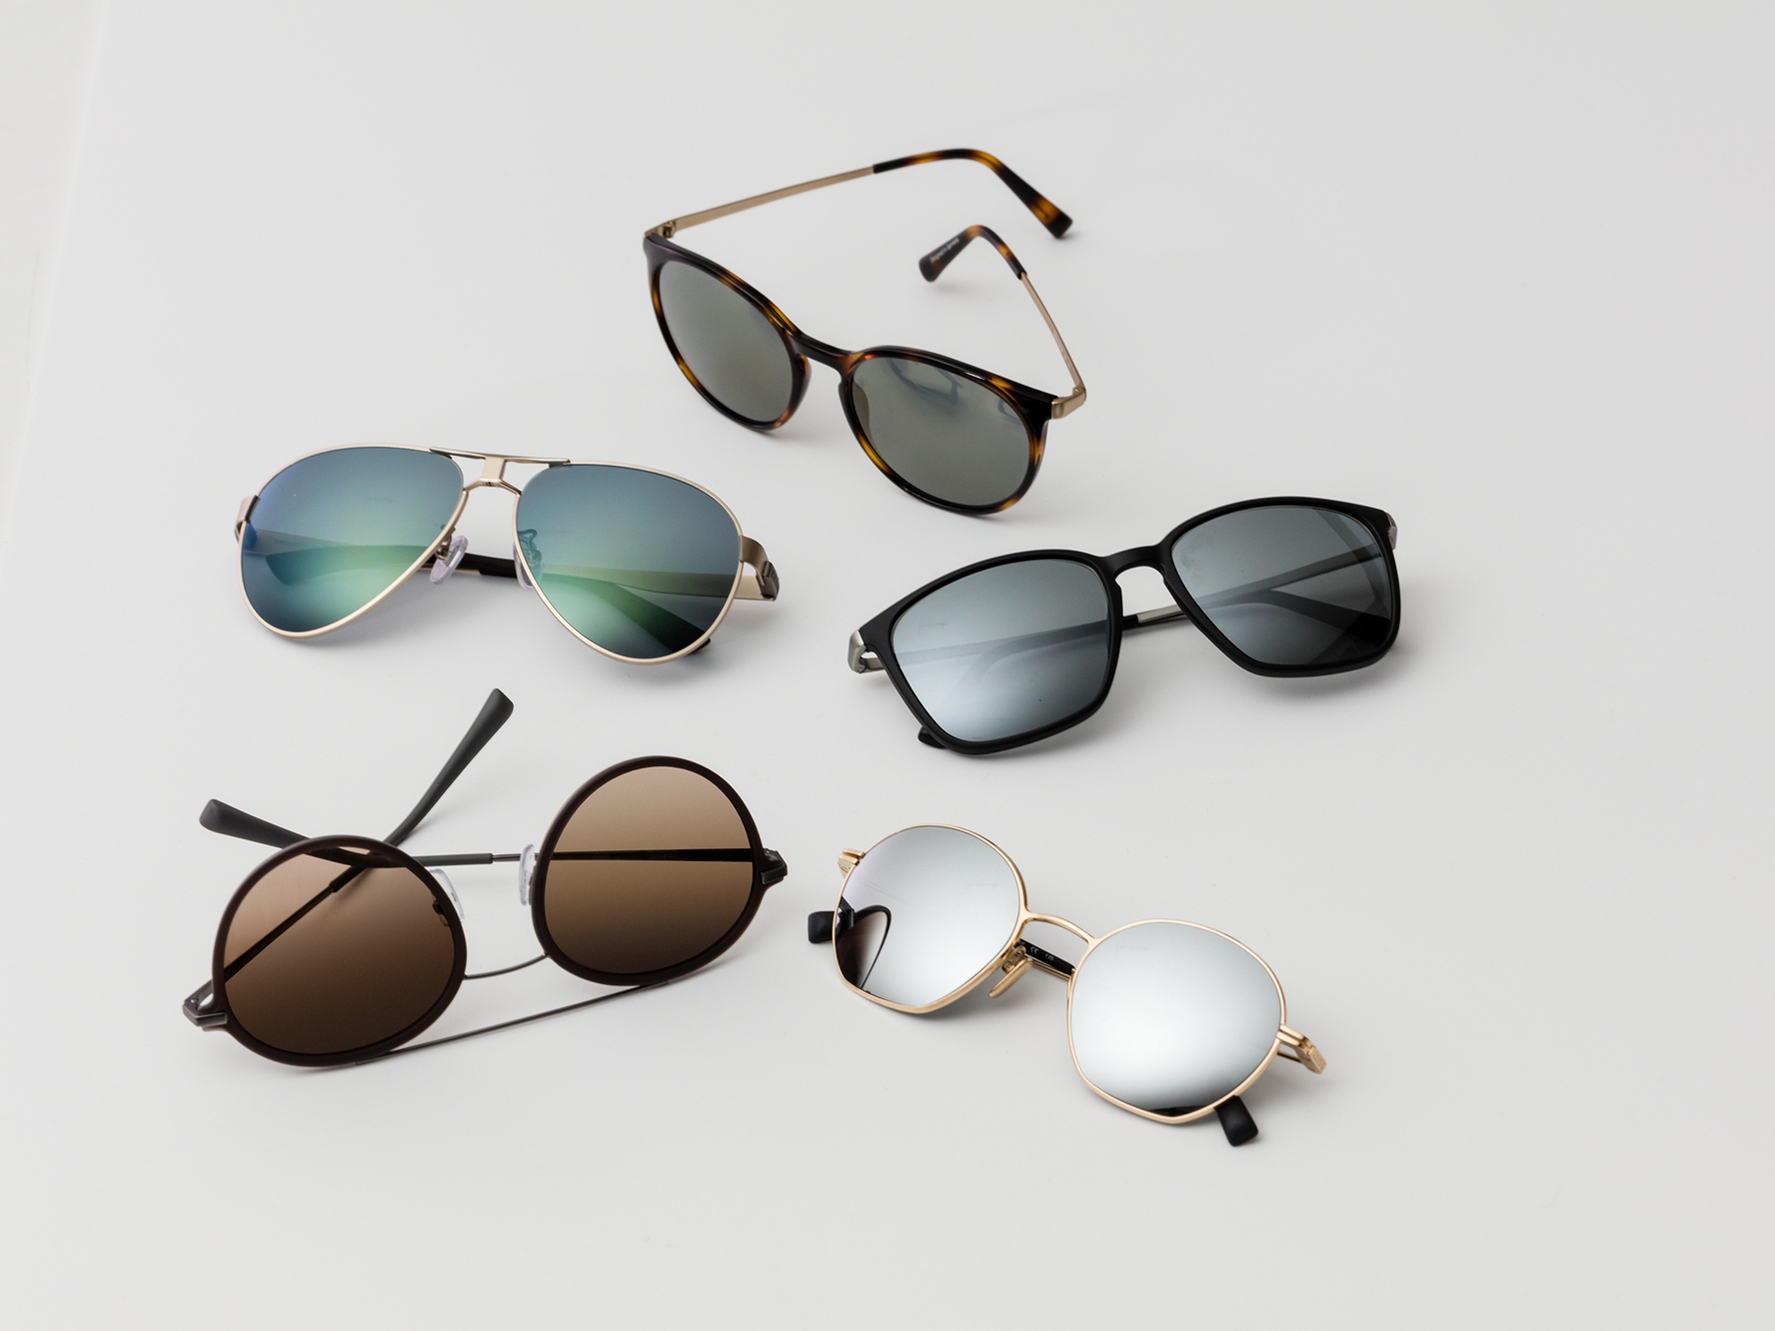 П'ять пар сонцезахисних окулярів із тонуванням класичних відтінків для умов середнього та яскравого освітлення.